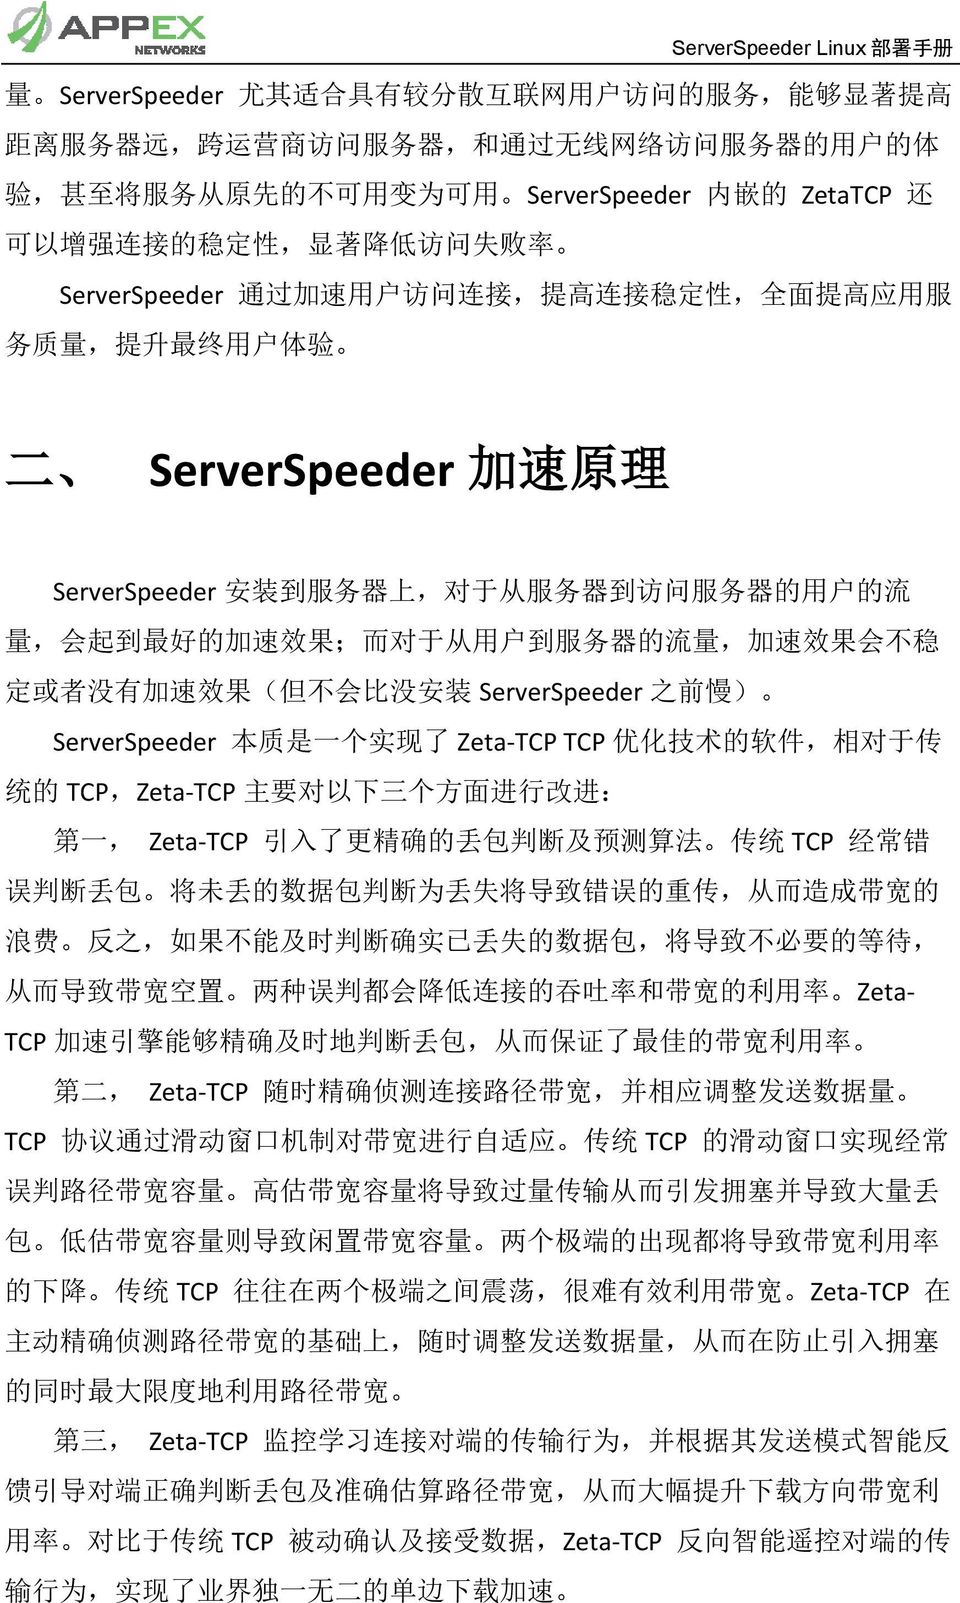 器 的 用 户 的 流 量, 会 起 到 最 好 的 加 速 效 果 ; 而 对 于 从 用 户 到 服 务 器 的 流 量, 加 速 效 果 会 不 稳 定 或 者 没 有 加 速 效 果 ( 但 不 会 比 没 安 装 ServerSpeeder 之 前 慢 ) ServerSpeeder 本 质 是 一 个 实 现 了 Zeta-TCP TCP 优 化 技 术 的 软 件, 相 对 于 传